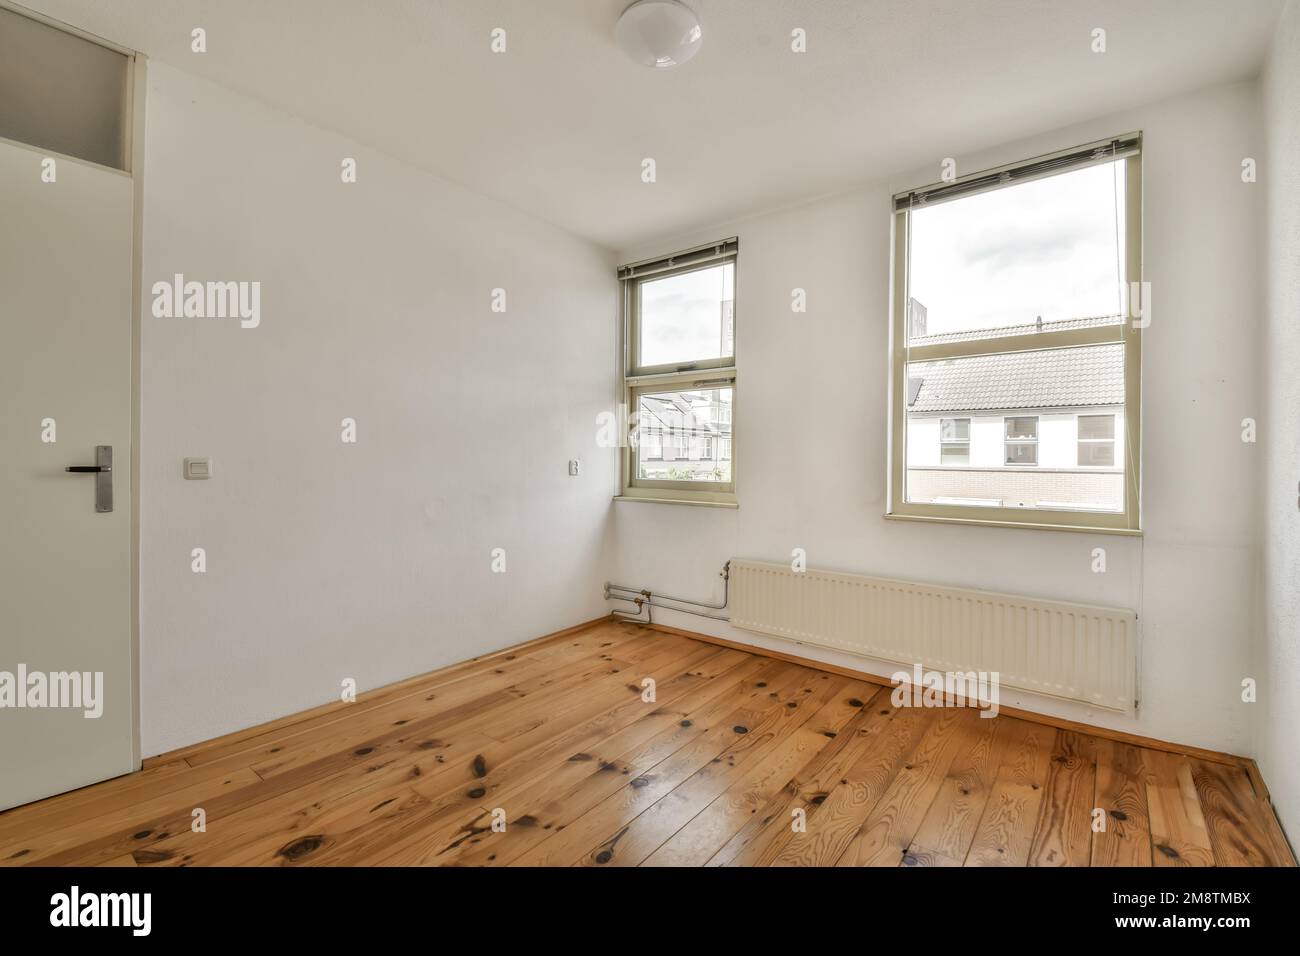 Ein leeres Zimmer mit Holzfußboden und weißen Wänden im Zimmer ist sehr sauber, aber es gibt kein Licht Stockfoto